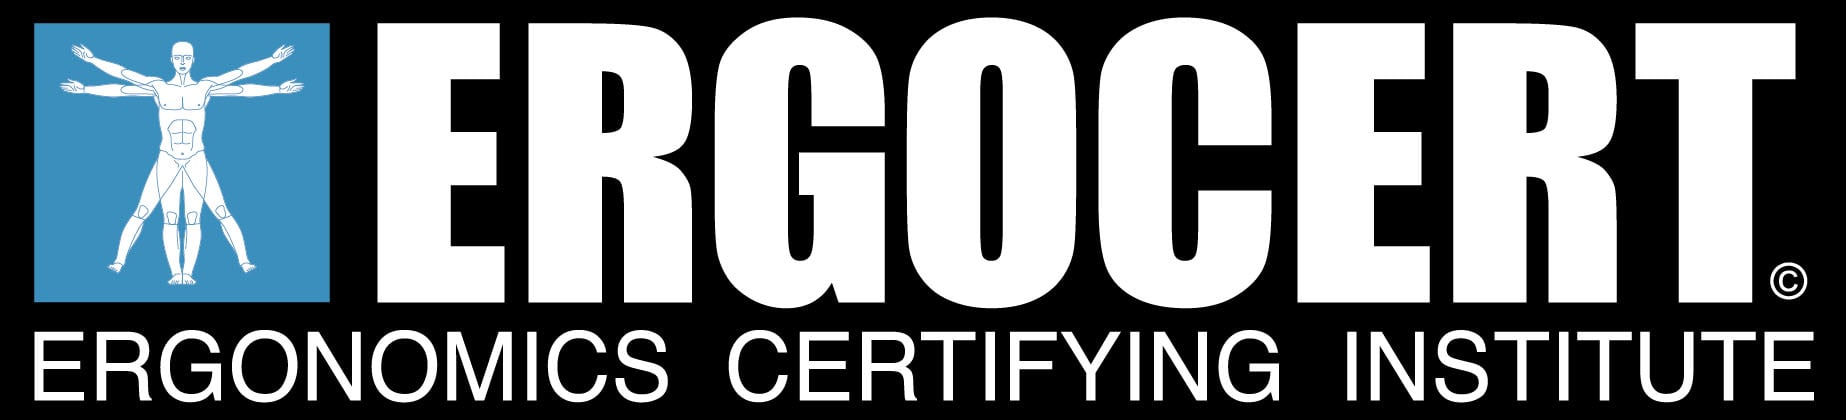 ergocert-logo